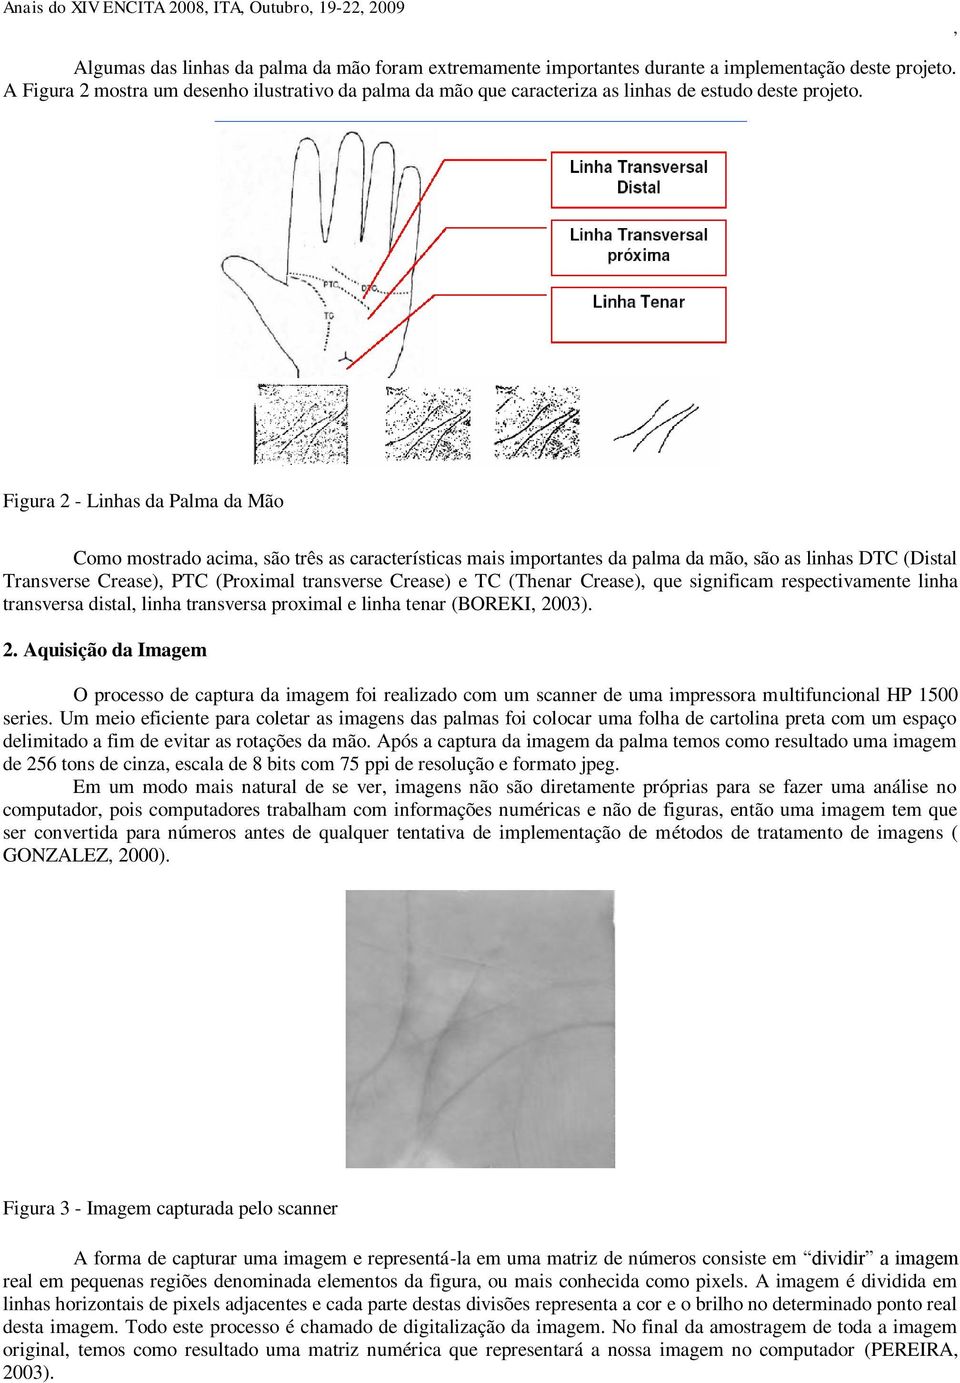 Figura 2 - Linhas da Palma da Mão Como mostrado acima são três as características mais importantes da palma da mão são as linhas DTC (Distal Transverse Crease) PTC (Proximal transverse Crease) e TC